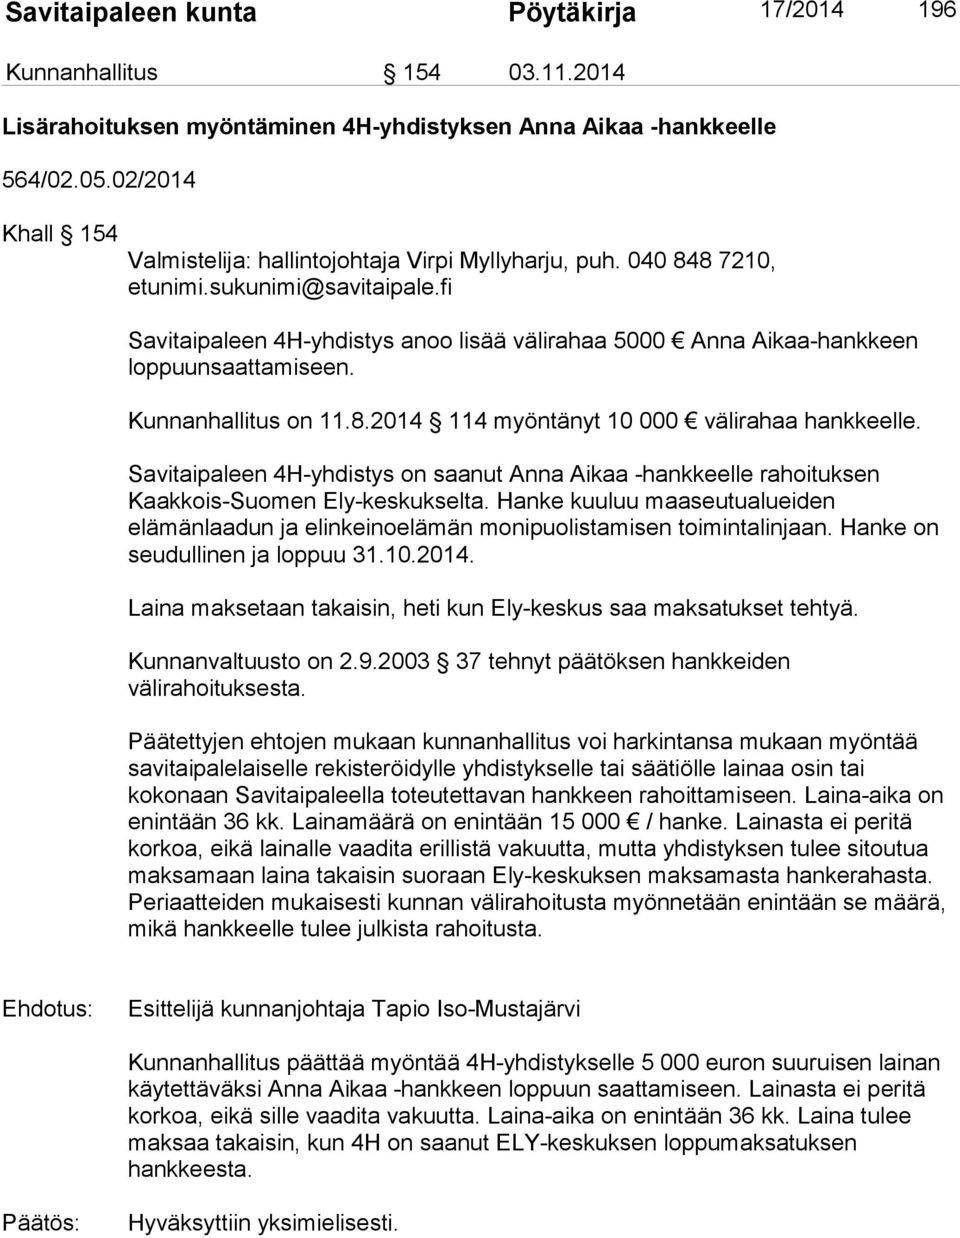 fi Savitaipaleen 4H-yhdistys anoo lisää välirahaa 5000 Anna Aikaa-hankkeen loppuunsaattamiseen. Kunnanhallitus on 11.8.2014 114 myöntänyt 10 000 välirahaa hankkeelle.